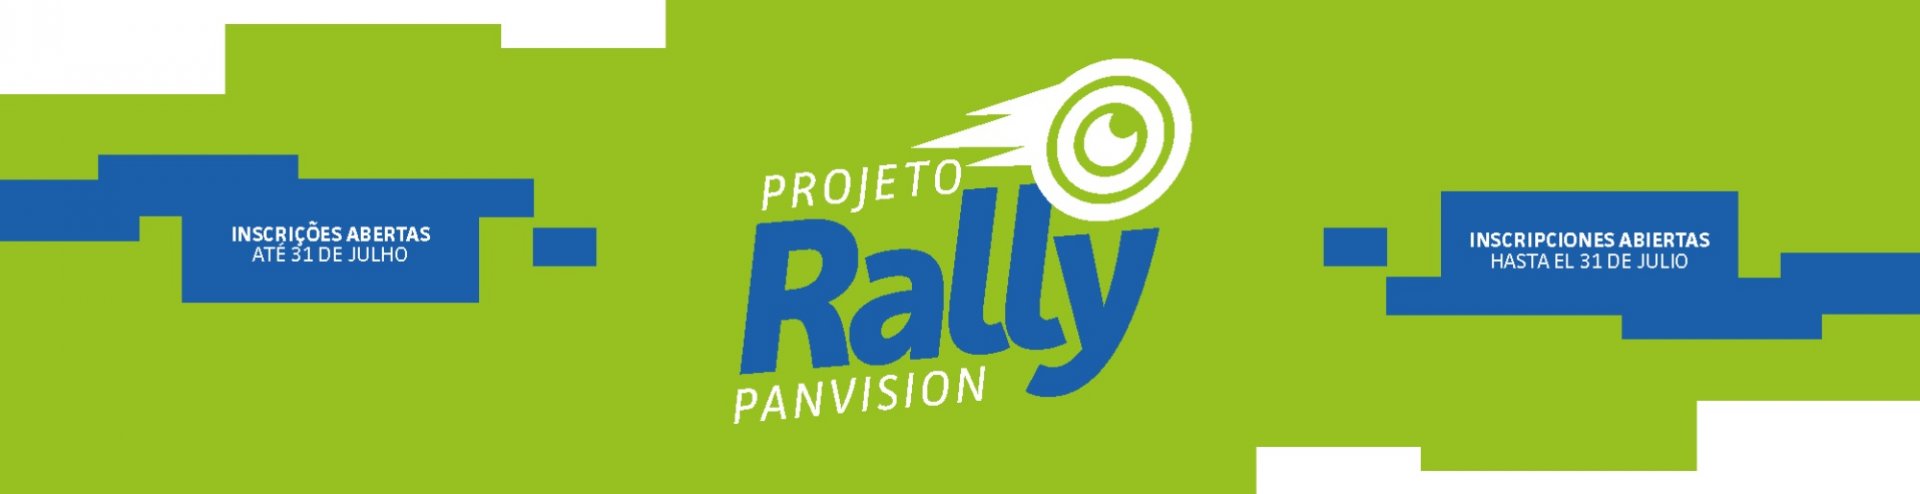 Abertas as inscrições para o Projeto Rally Panvision